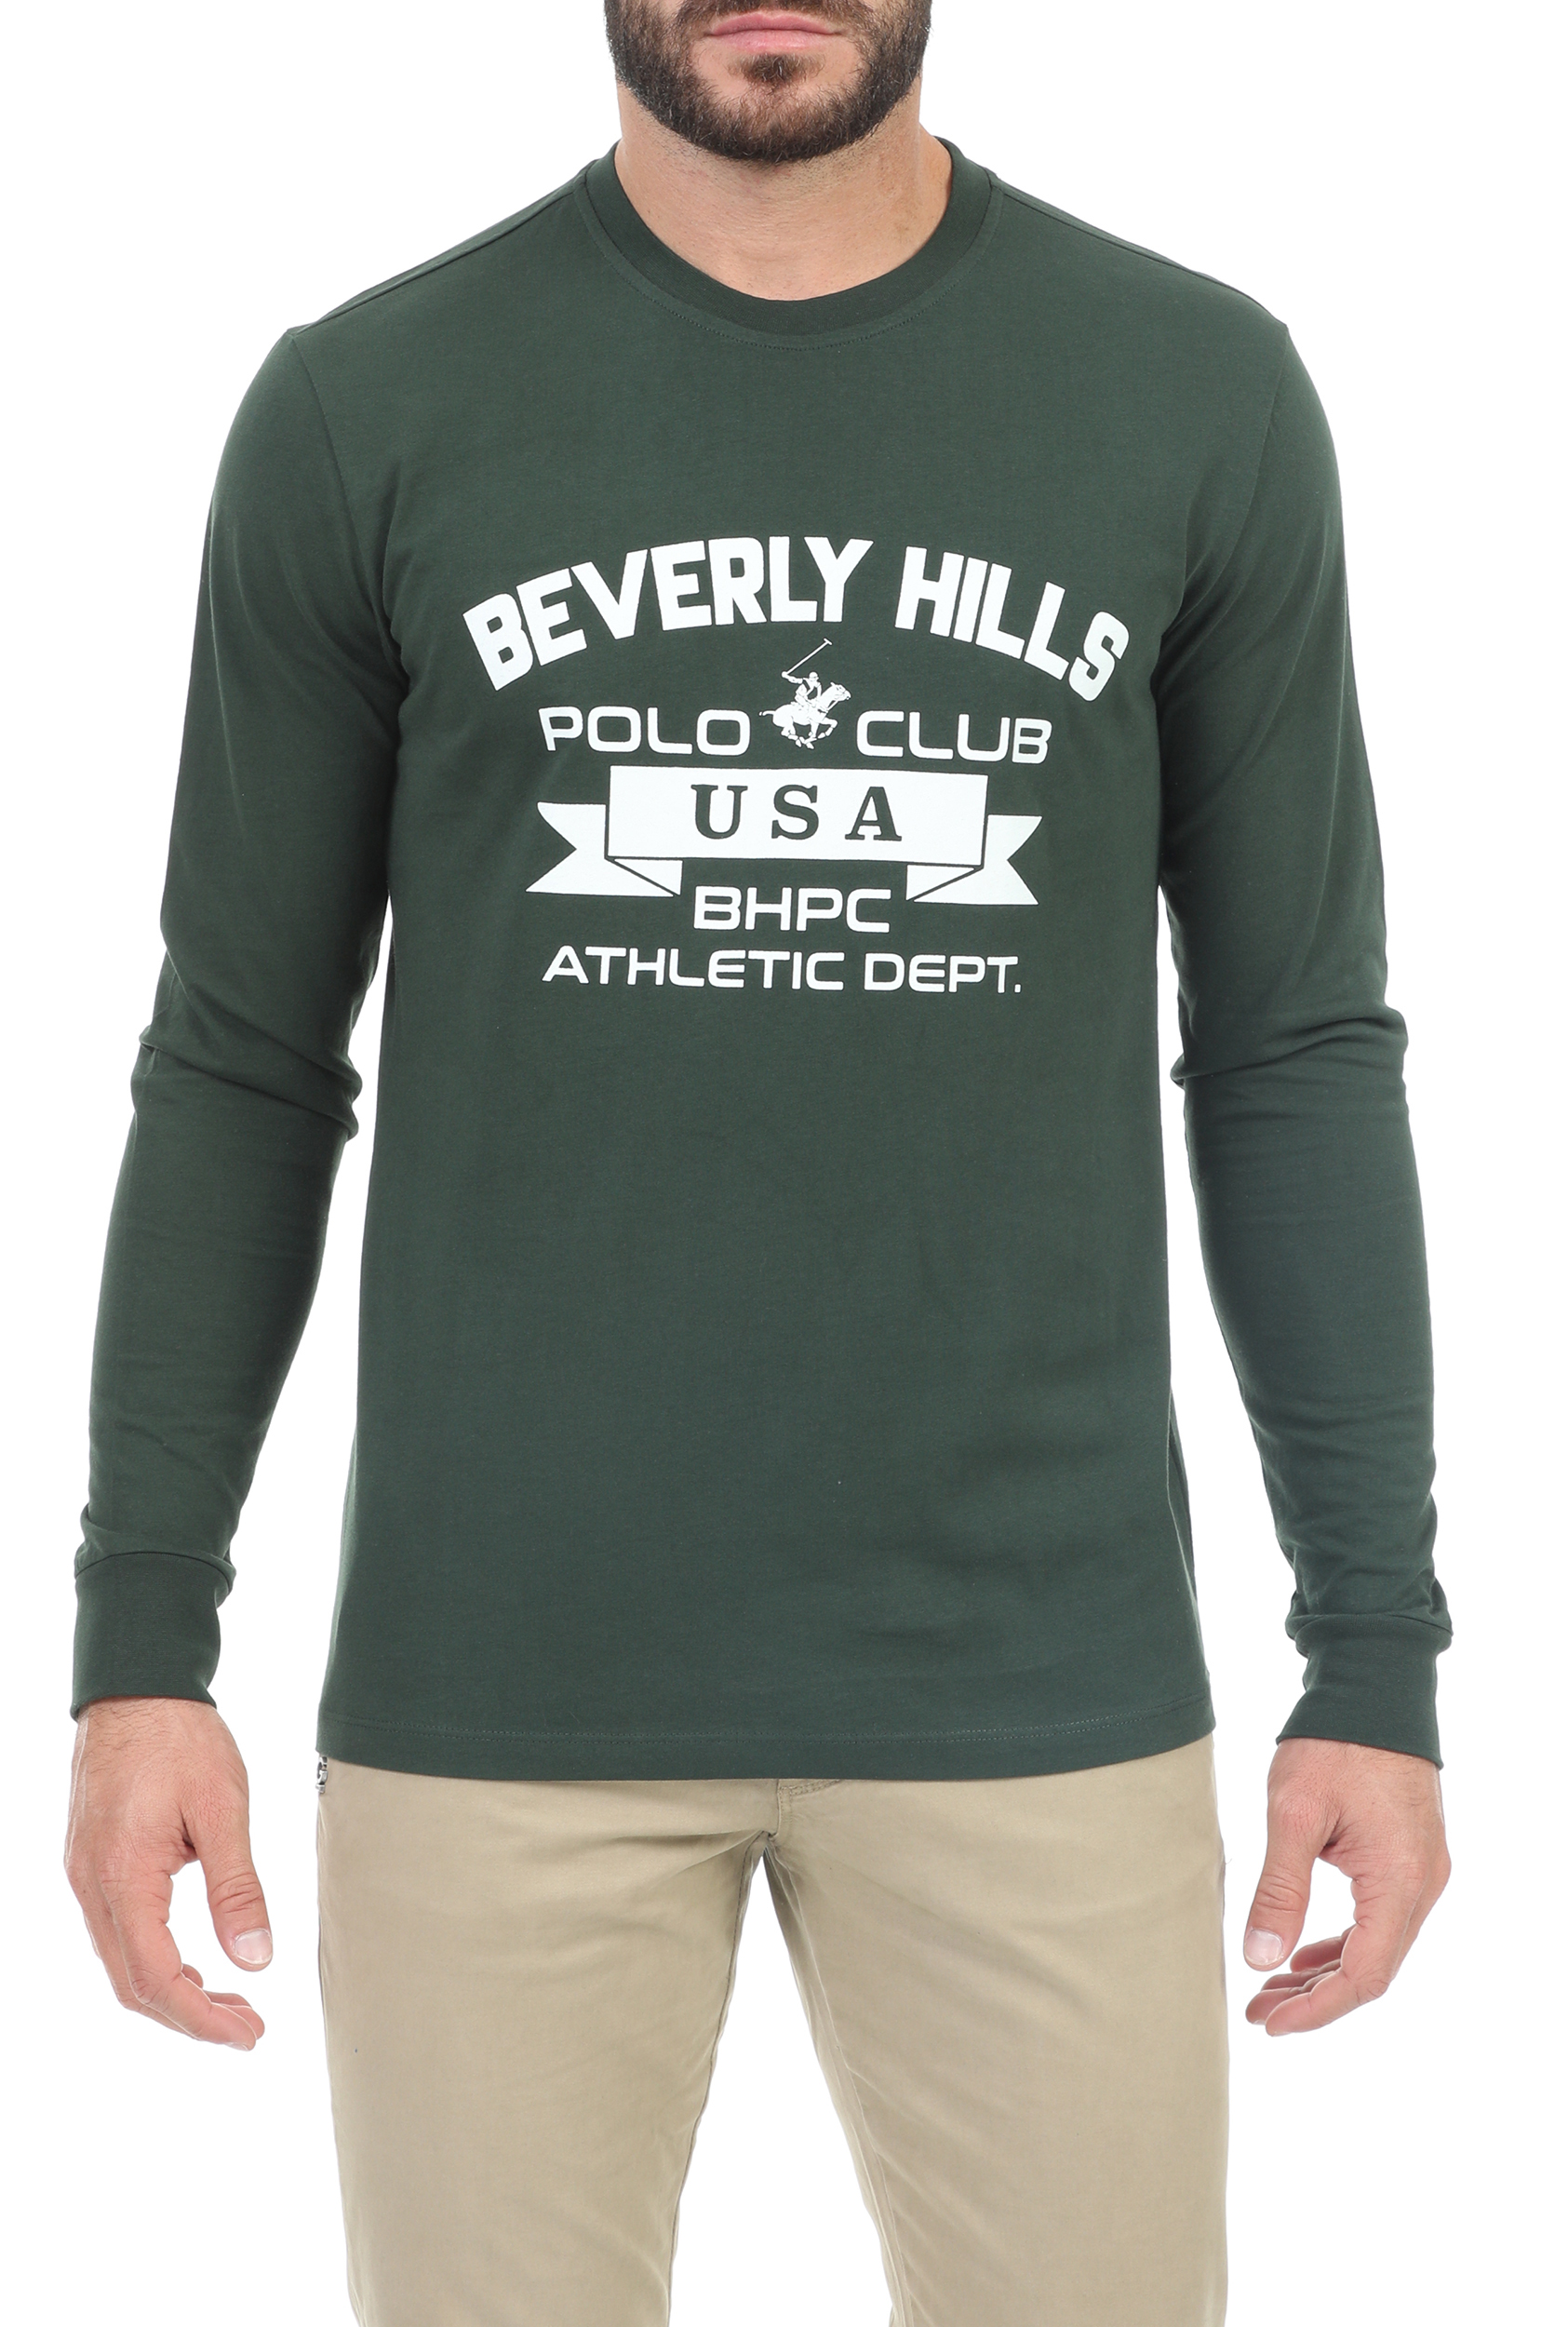 Ανδρικά/Ρούχα/Μπλούζες/Μακρυμάνικες BEVERLY HILLS POLO CLUB - Ανδρική μπλούζα BEVERLY HILLS POLO CLUB M L/S CREW πράσινη